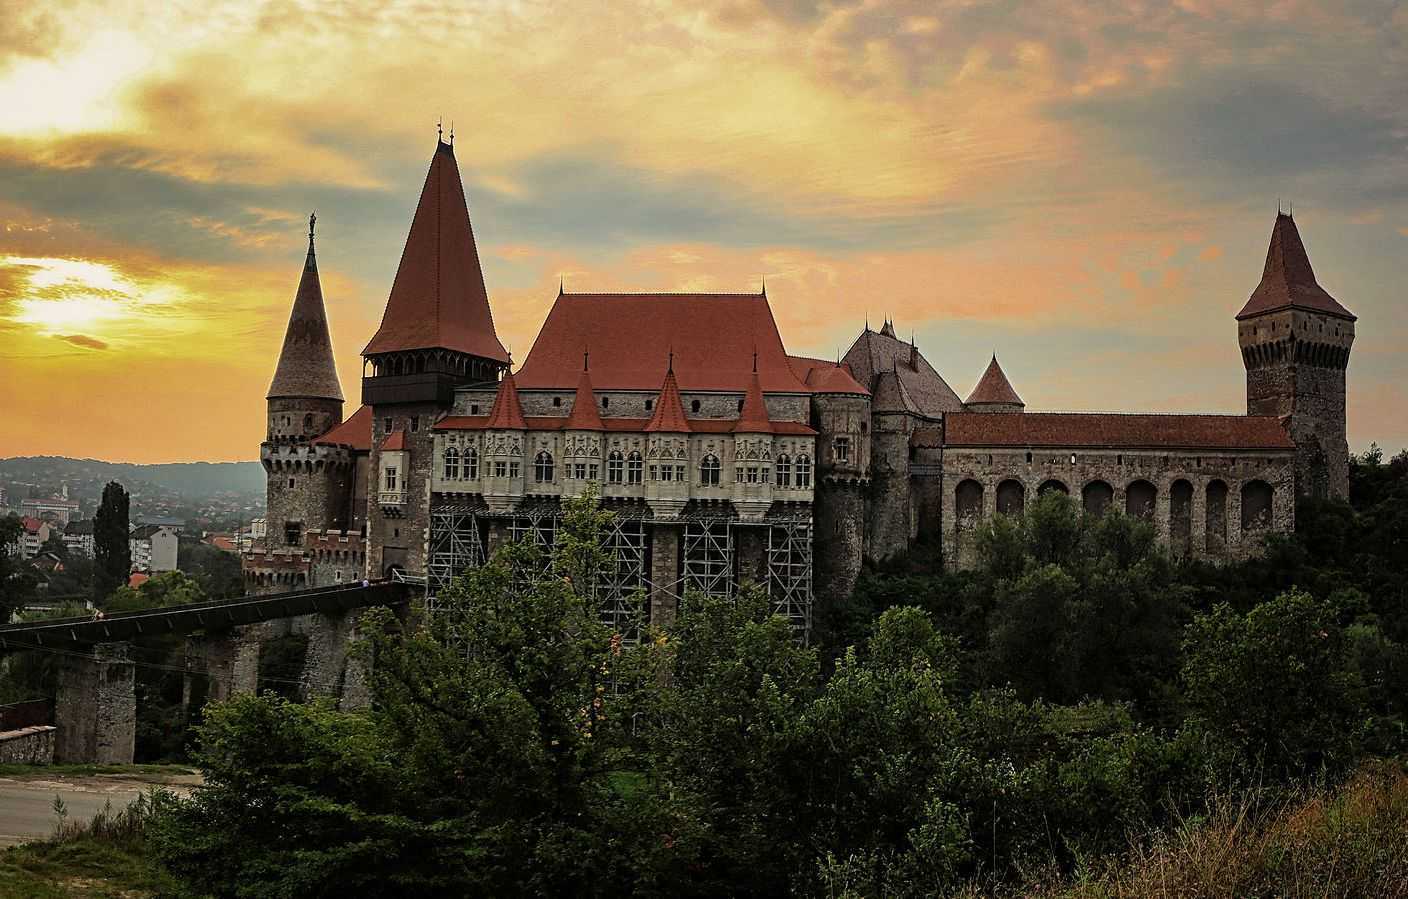 Castelul_Corvineștilor;_pe_fundal_se_vede_orașul_Hunedoara.